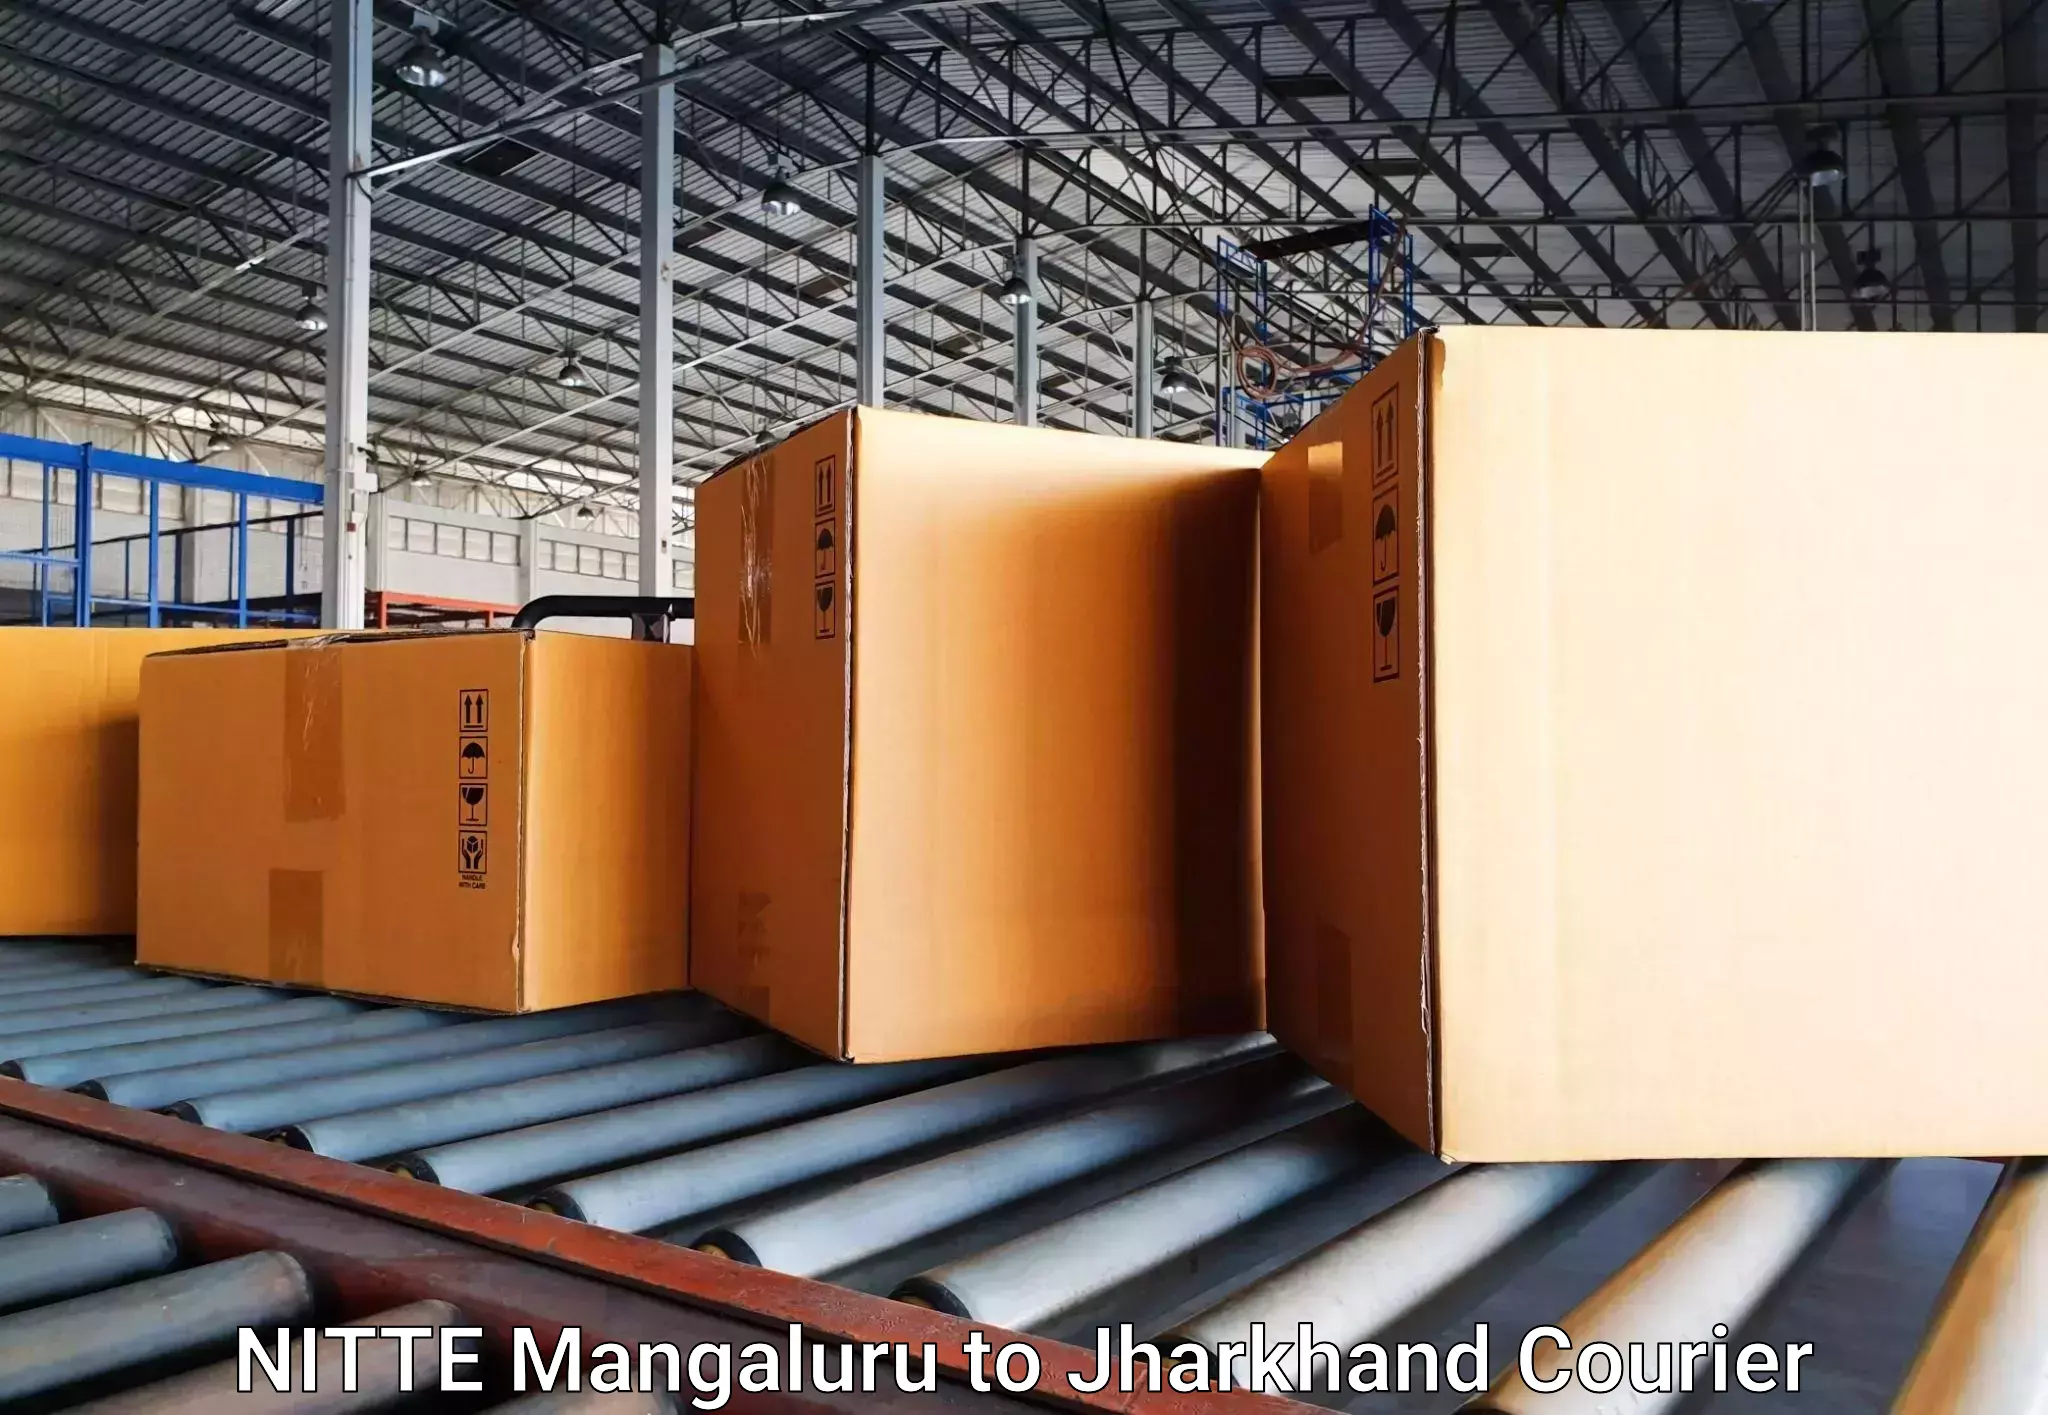 Baggage transport technology NITTE Mangaluru to Ranchi